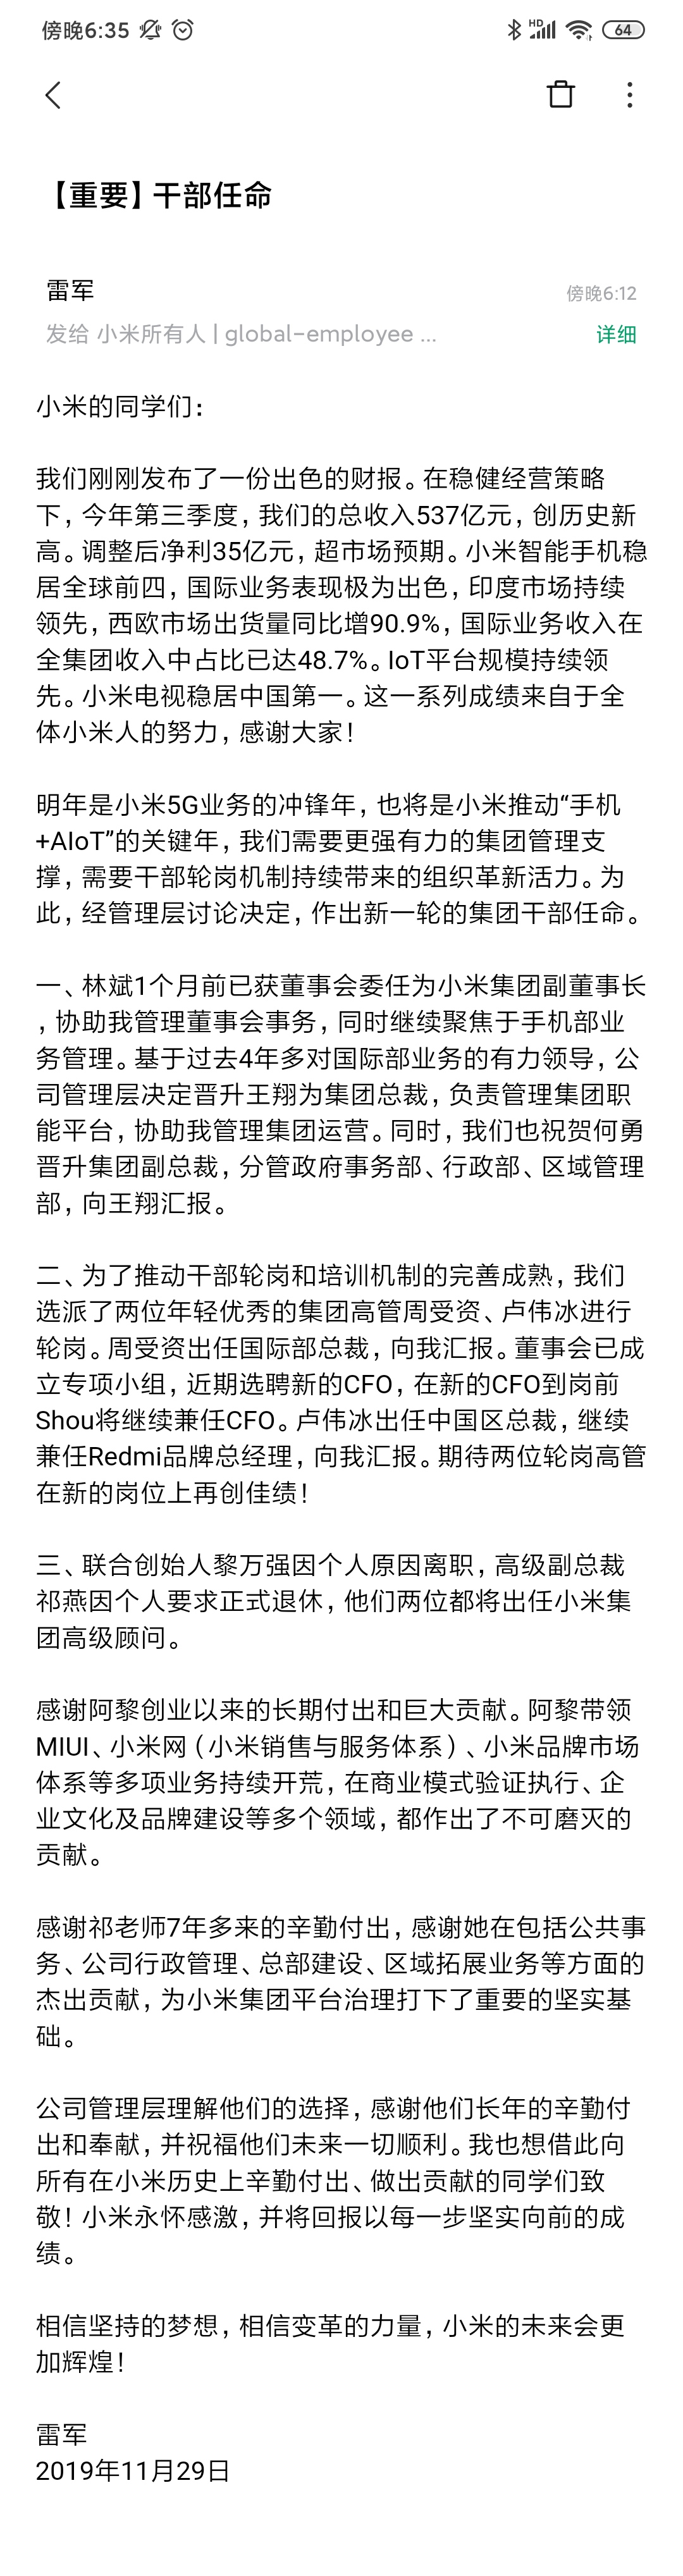 小米高管大调整：雷军卸任中国区总裁、联合创始人黎万强离职